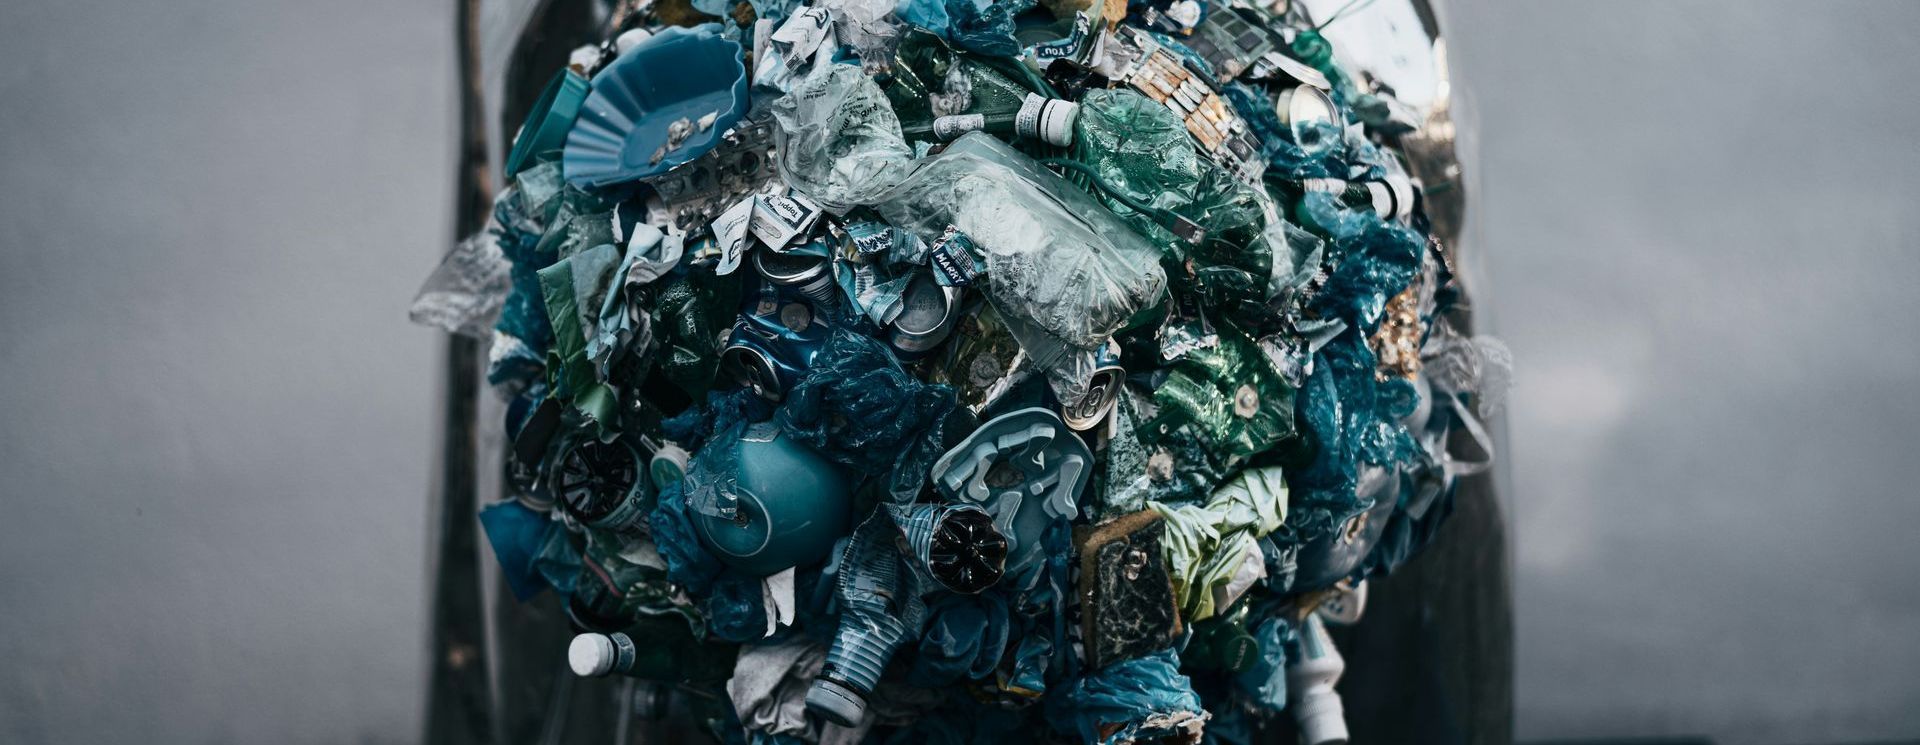 Afval scheiden al jaren verplicht, maar bedrijven weten het niet